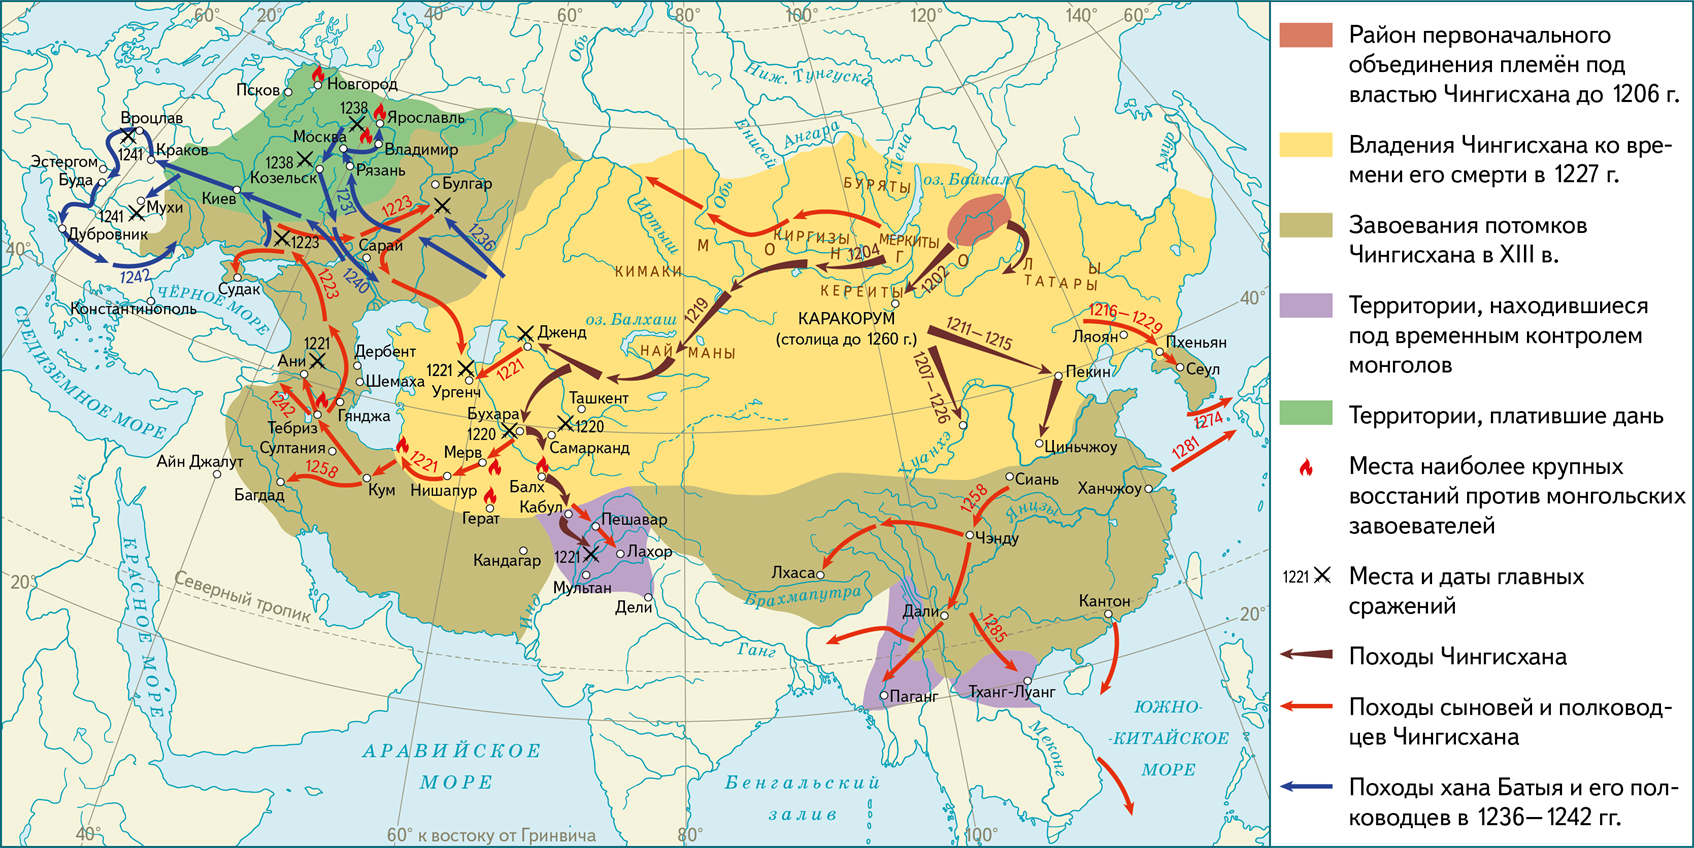 Невероятная жизнь и завоевания чингисхана: от объединения монгольских племён до создания гигантской континентальной империи